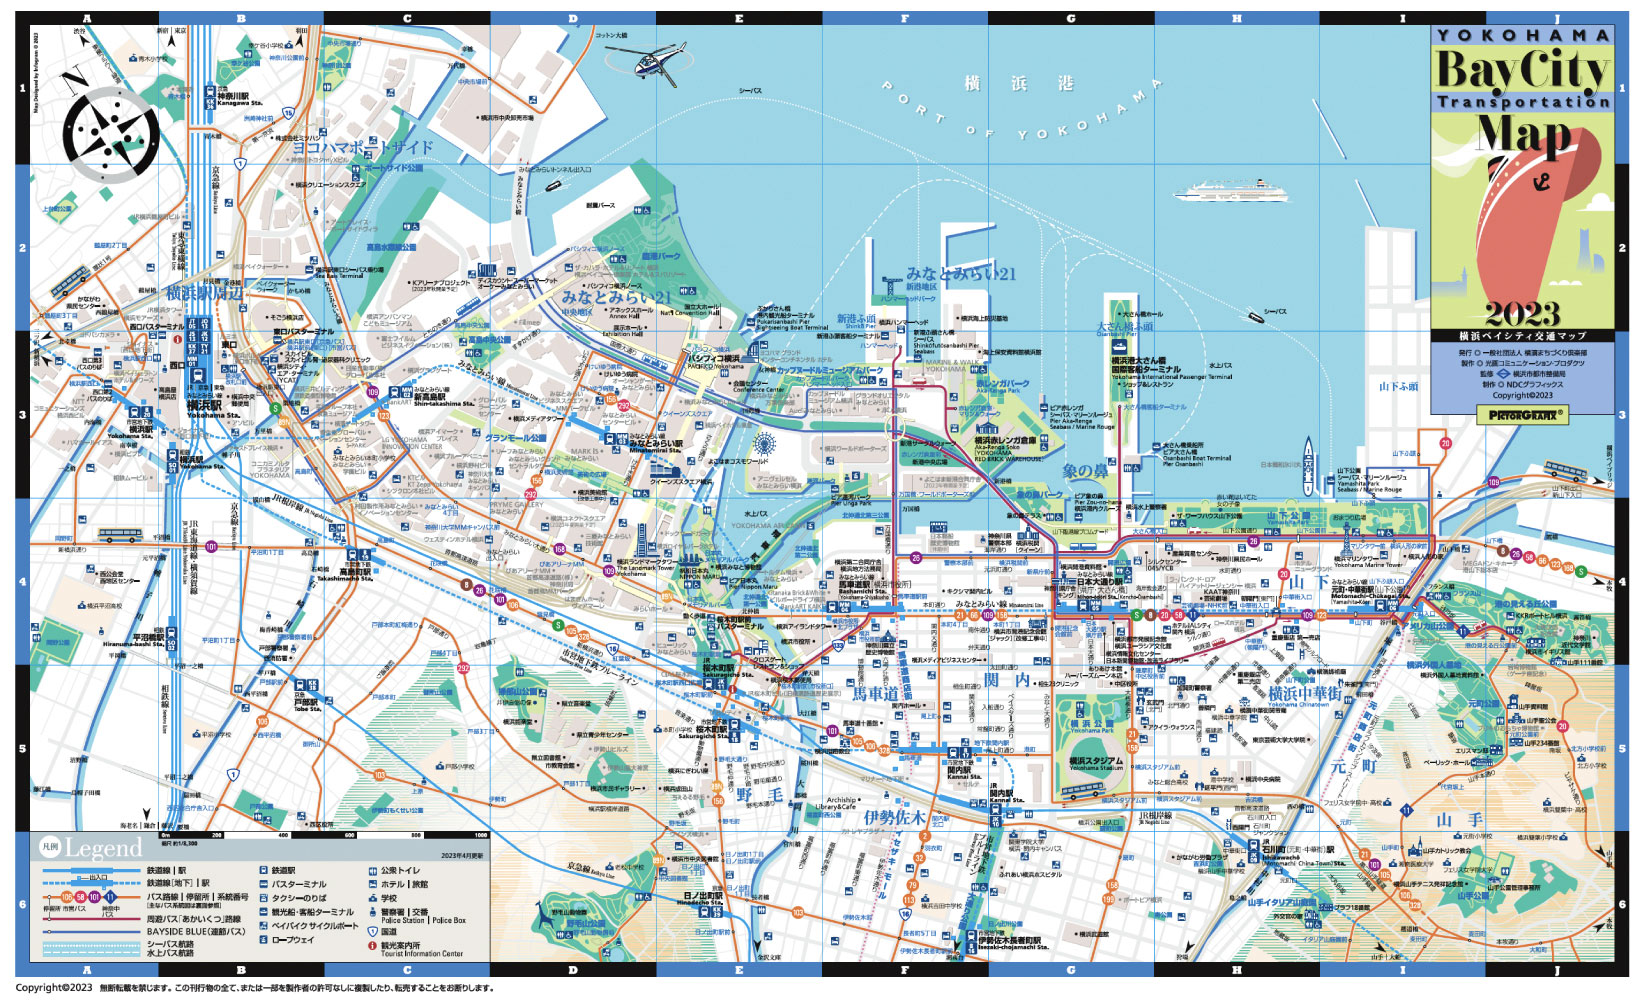 横浜ベイシティ交通マップ